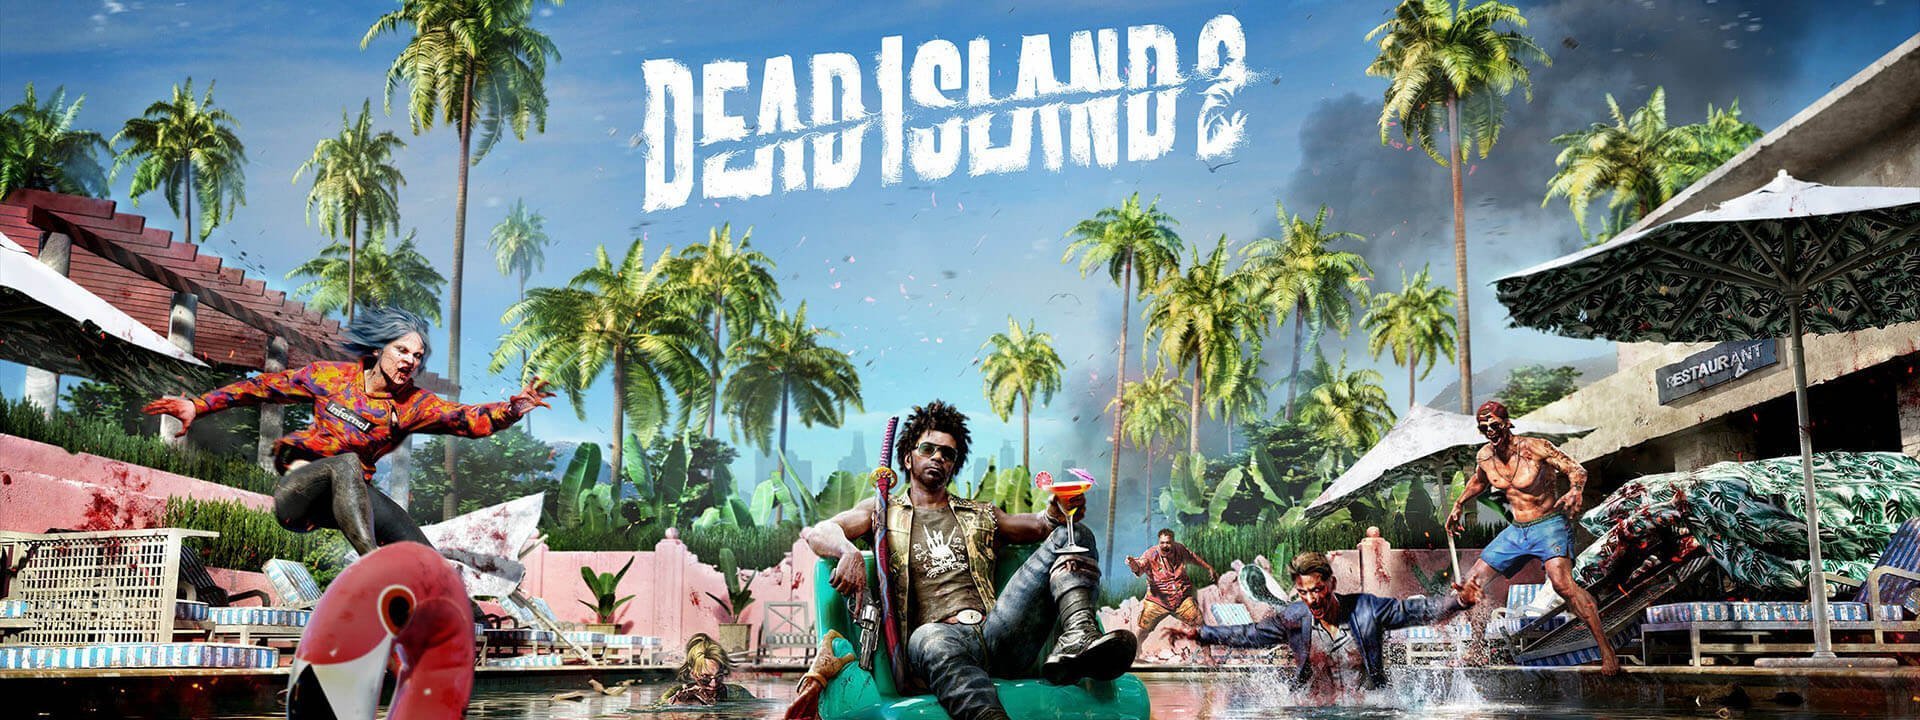 dead-island-2-cover-1